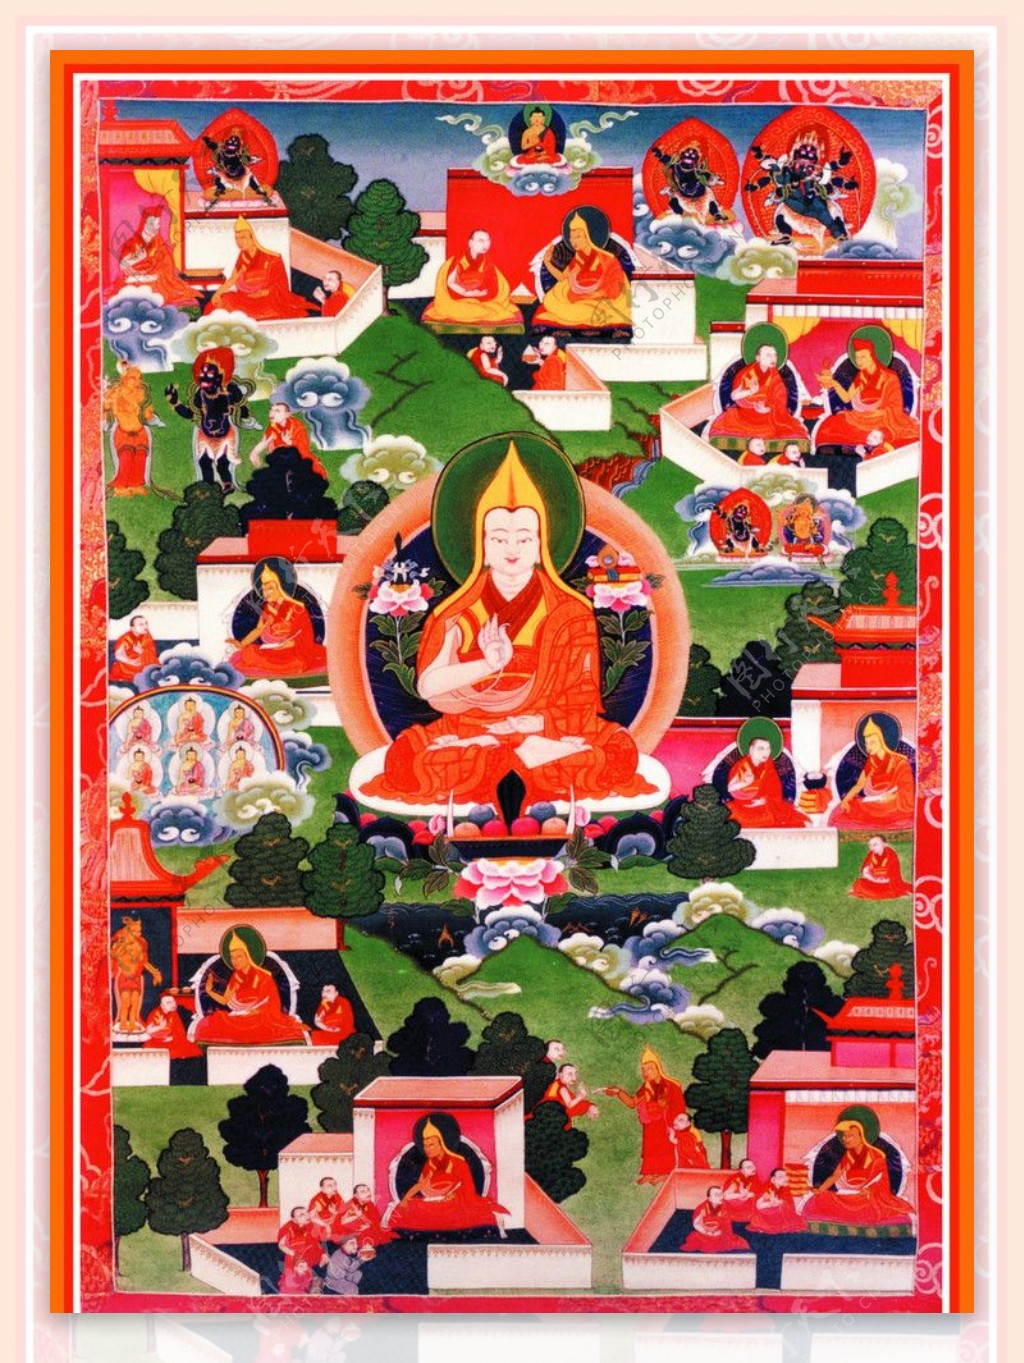 西藏日喀则唐卡佛教佛法佛经佛龛唐卡全大藏族文化09图片